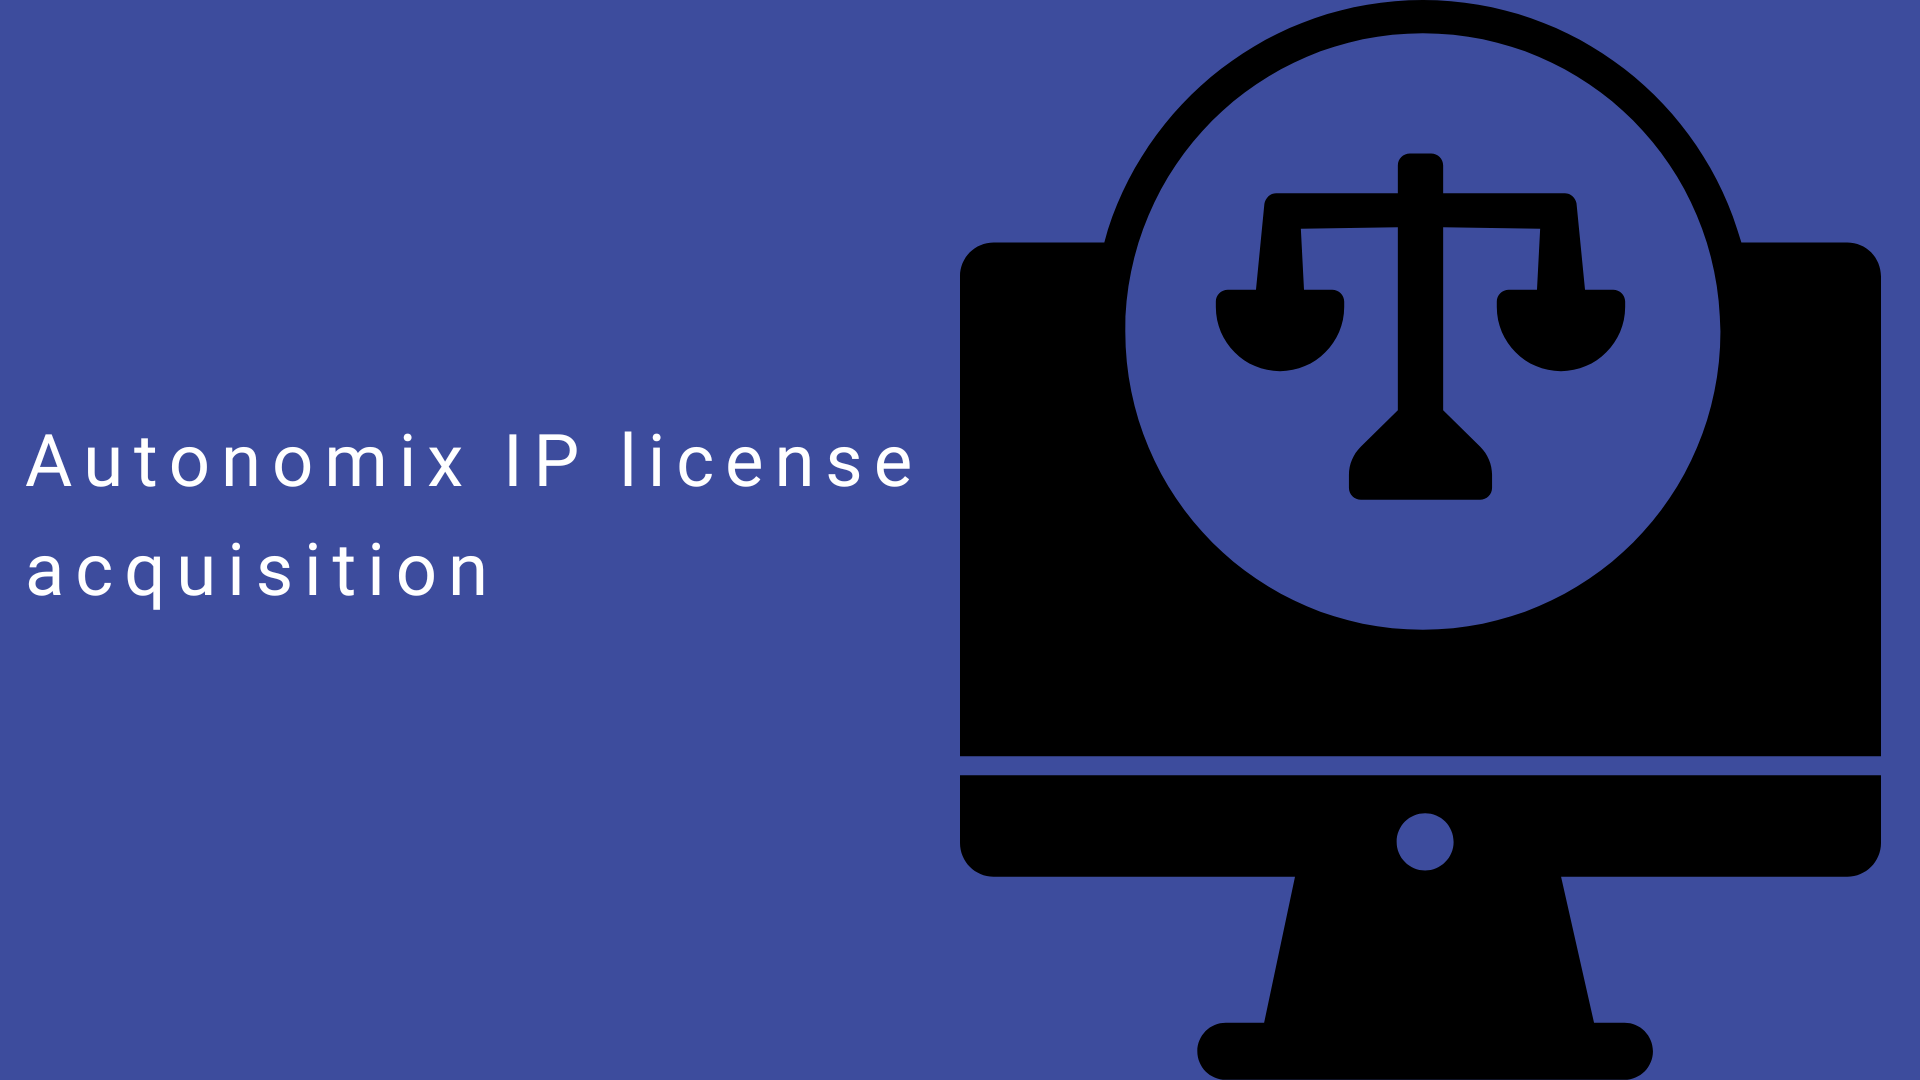 Autonomix IP license acquisition